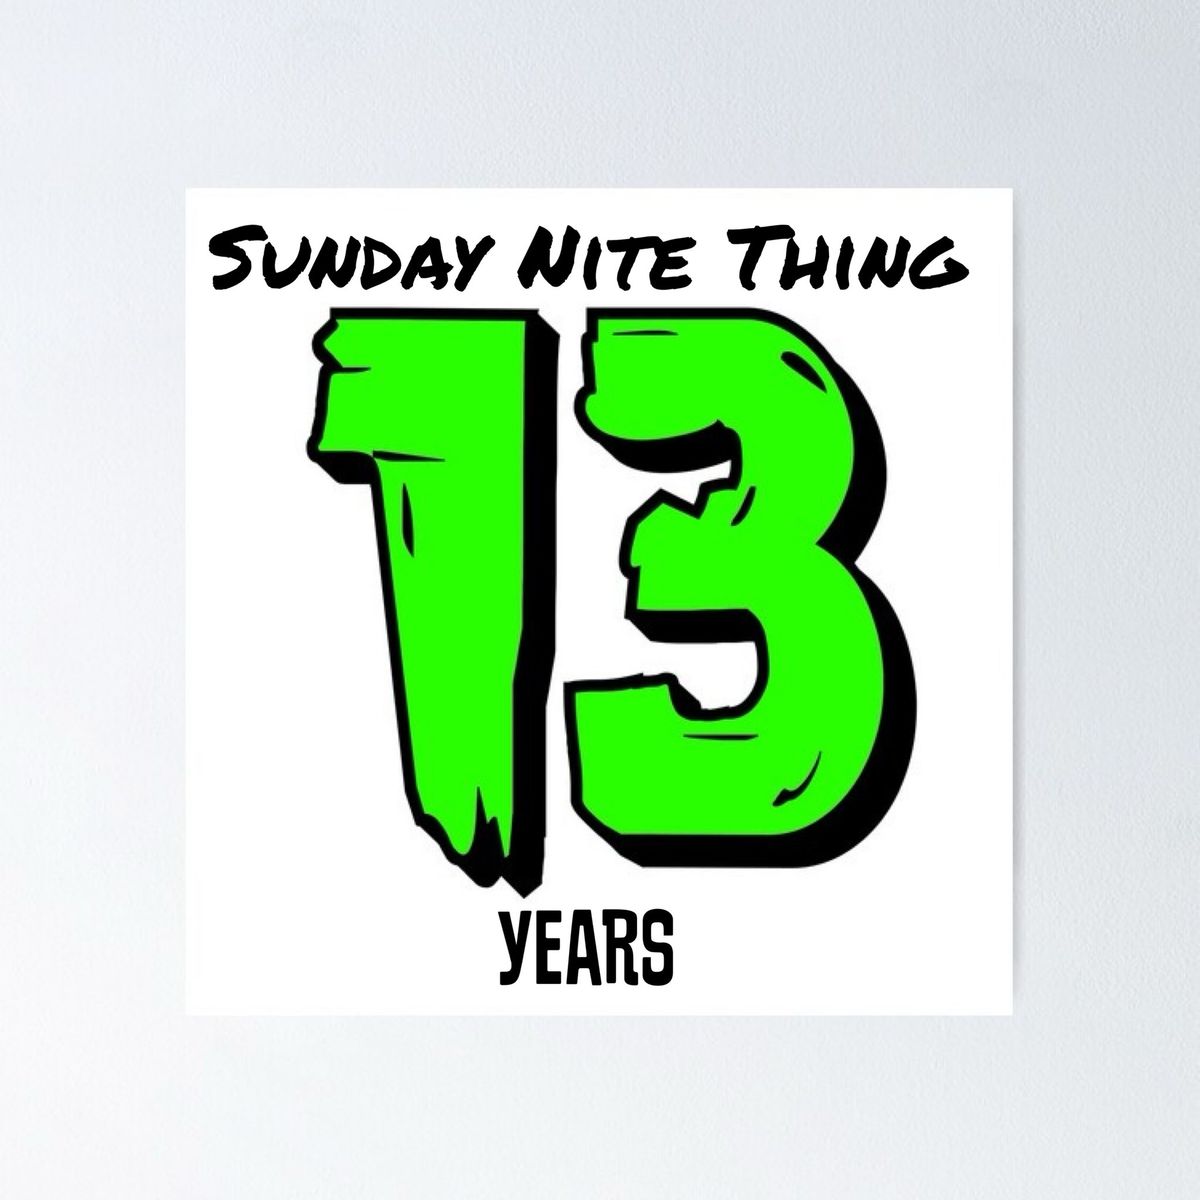 Sunday Nite Thing 13 Year Anniversary 